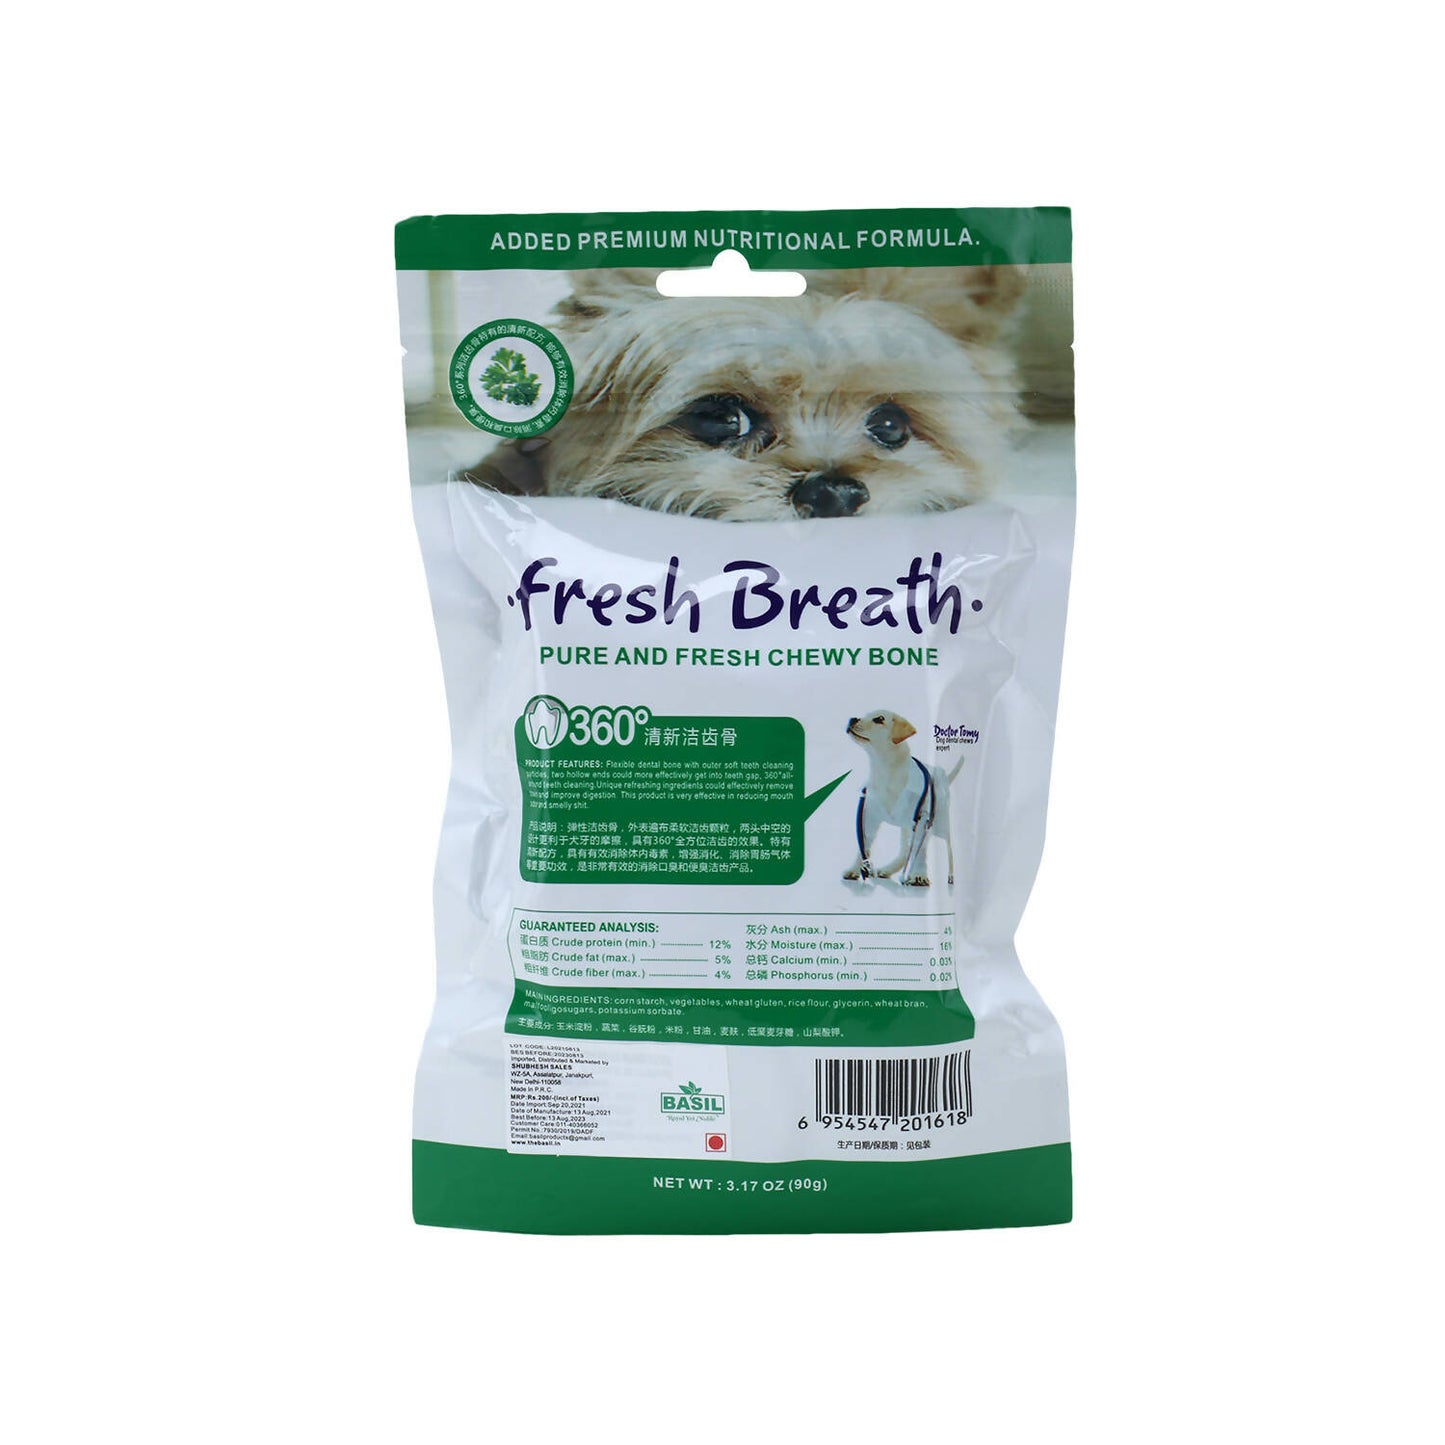 Basil - Fresh Breath 360 Chewy Bone Treat For Dogs